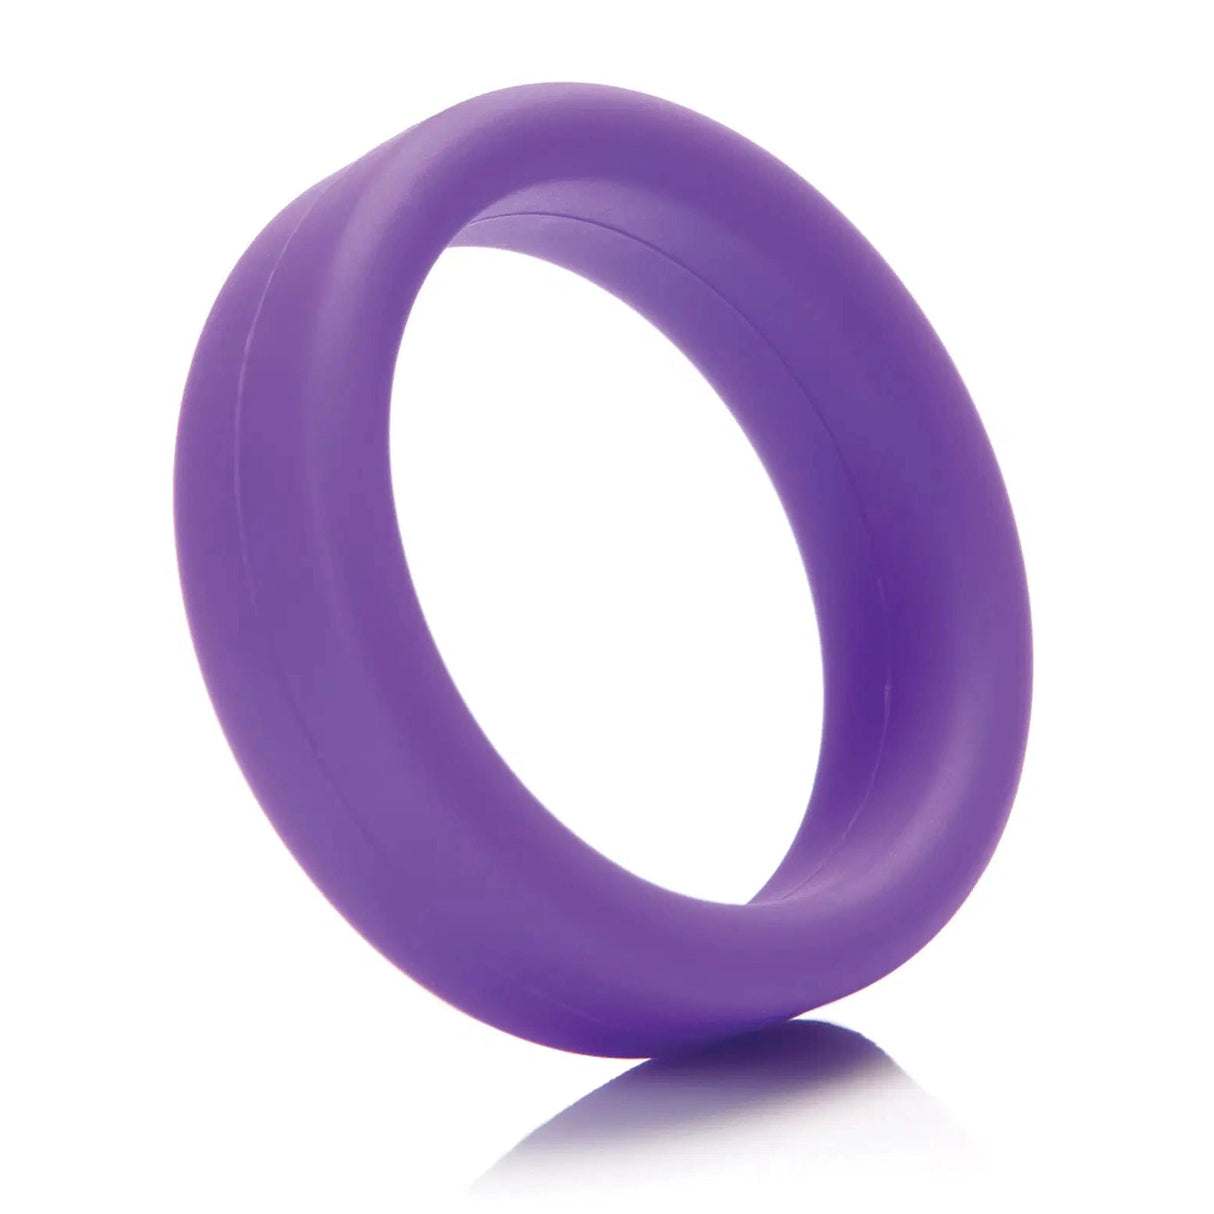 1.5 Inch Super Soft Ultra-Premium Silicone Cock Ring